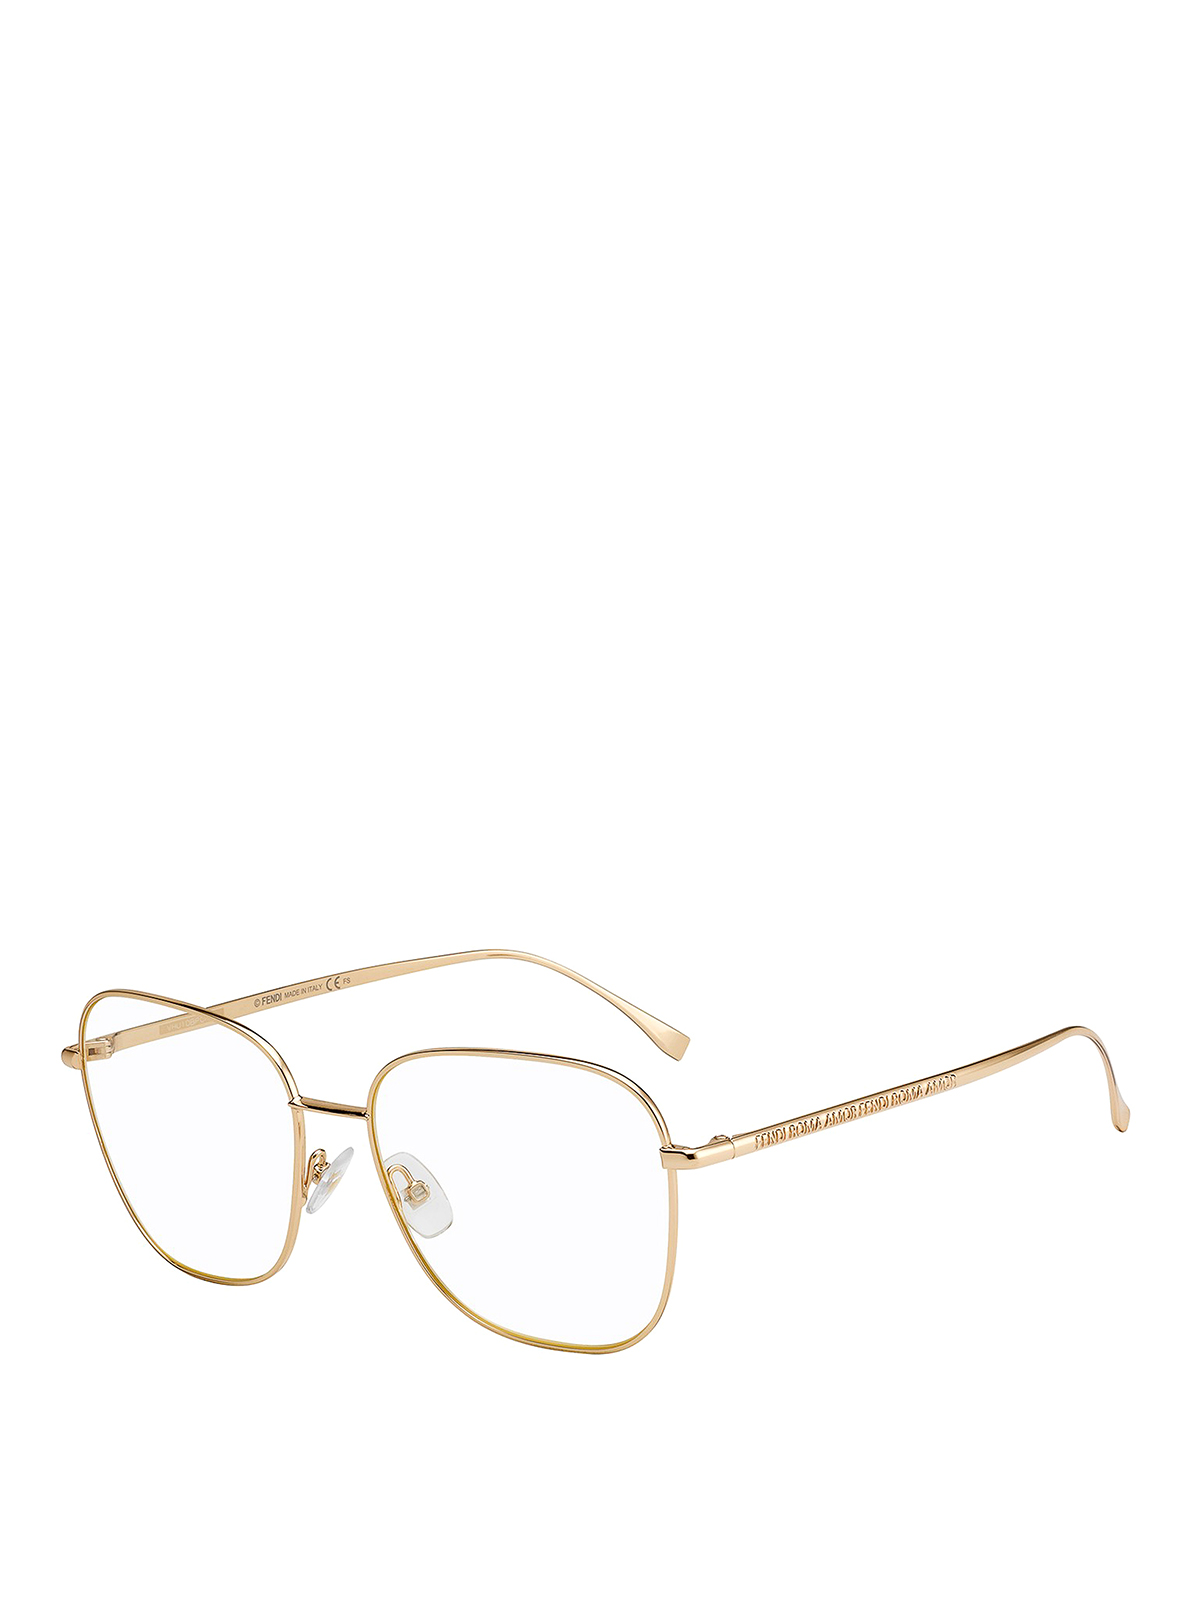 Fendi - Amor Fendi optical glasses 